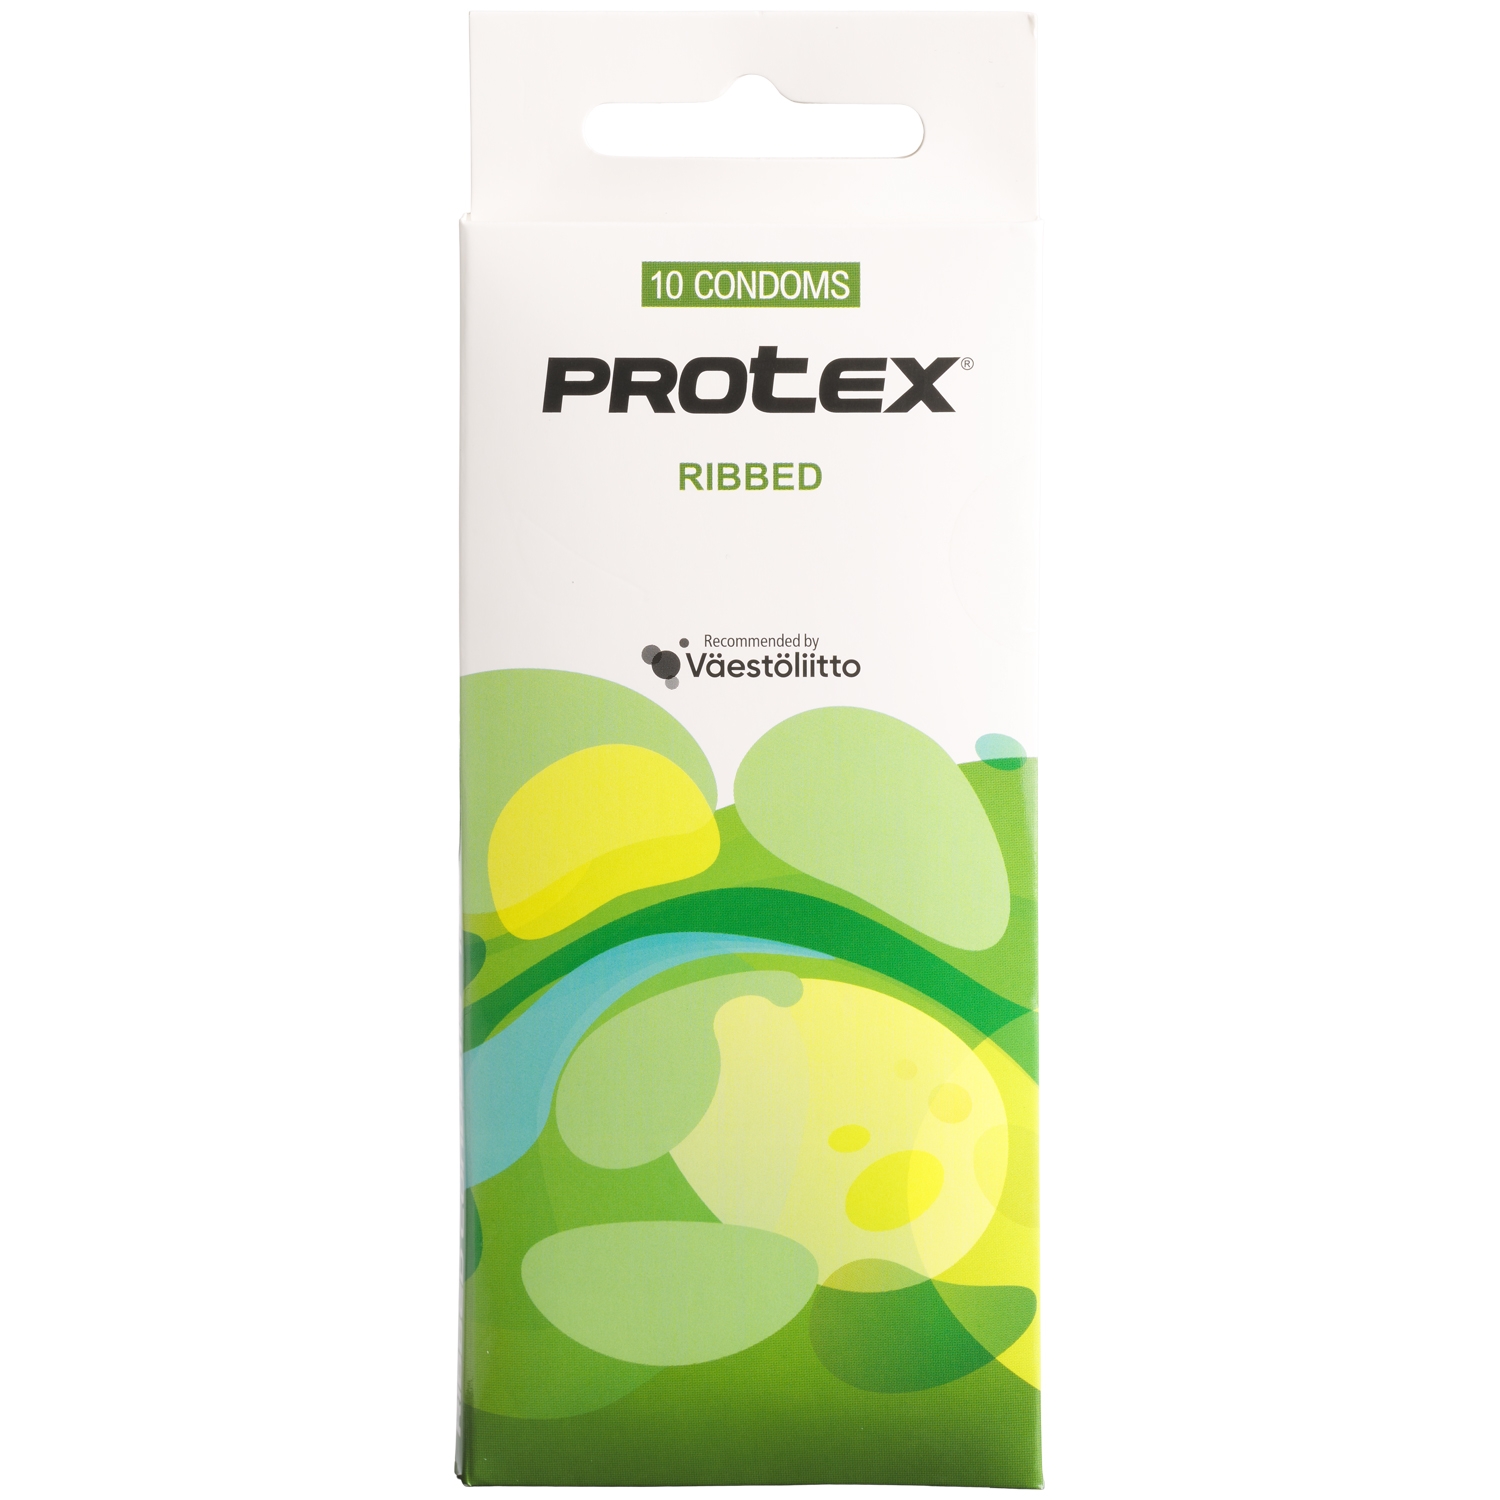 11271-protex-ribbed-kondomer-10-stk_01_q100